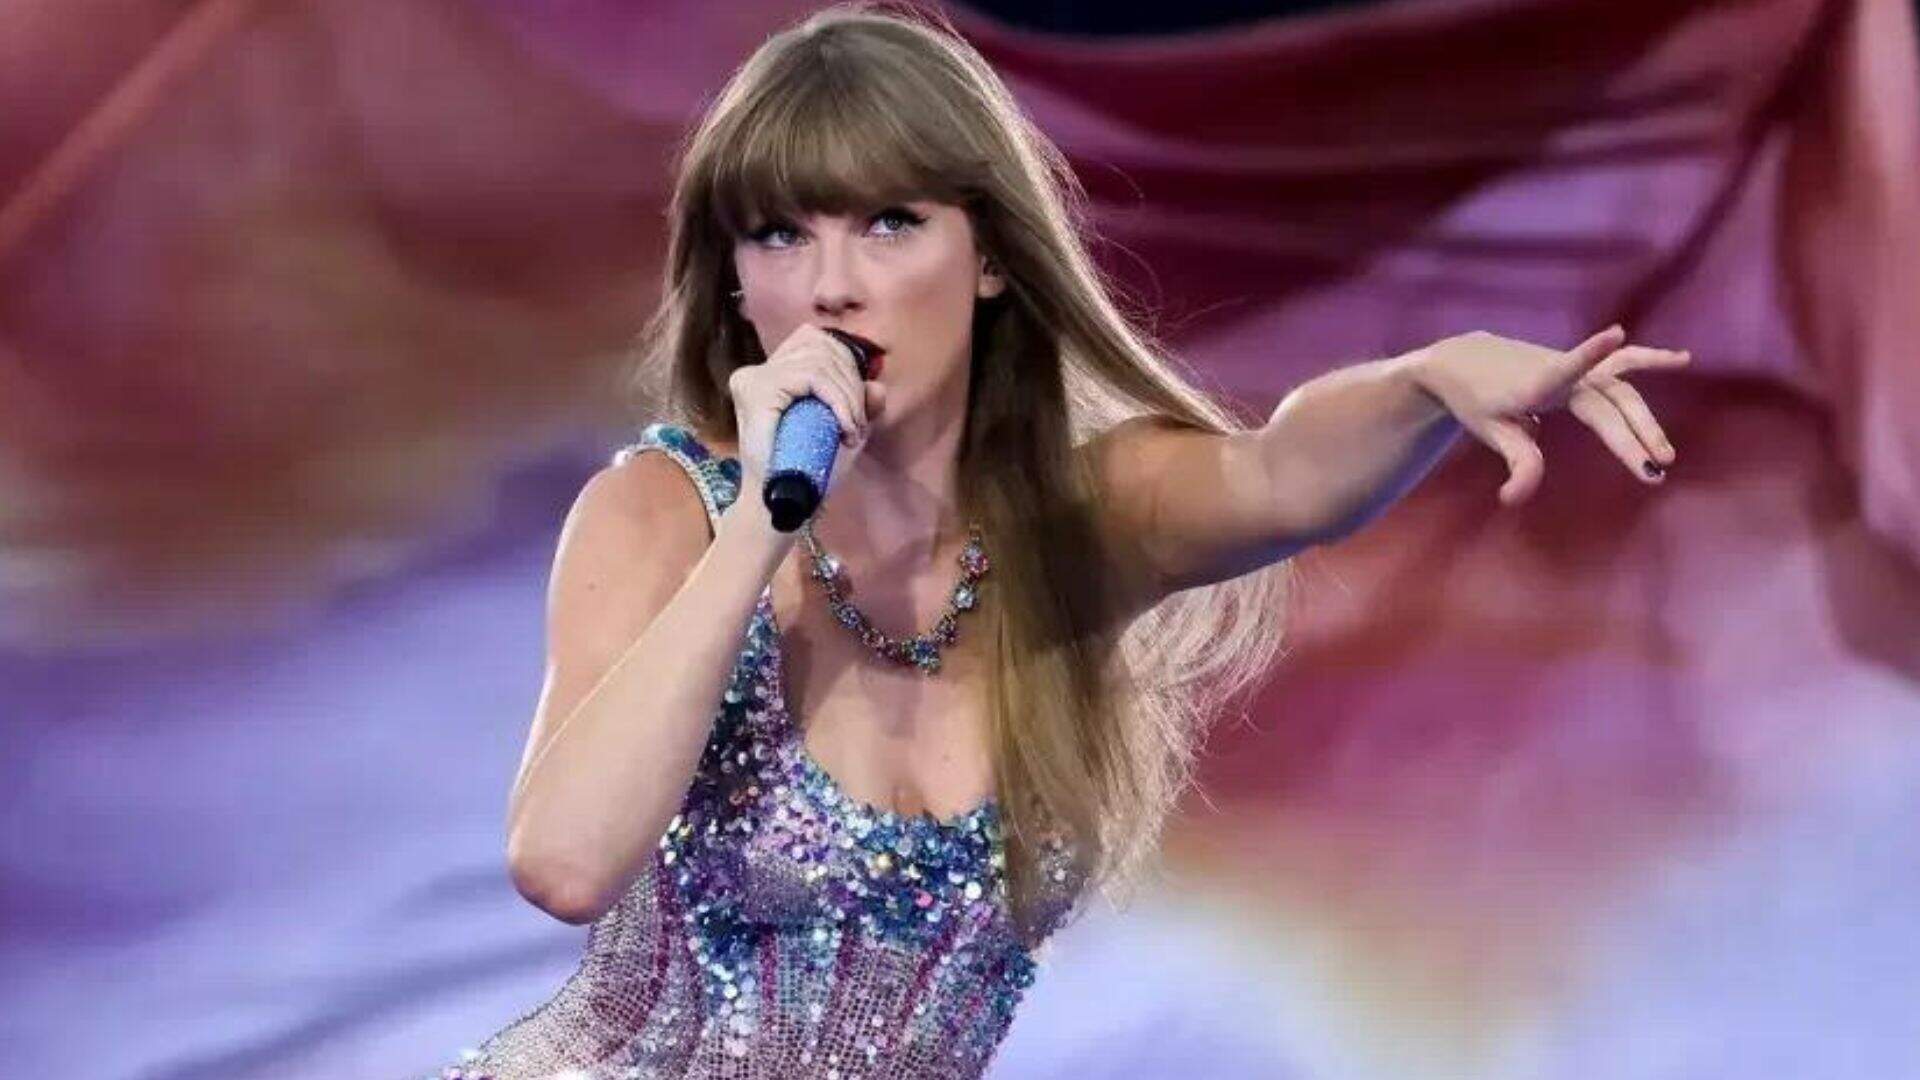 Ingressos esgotados! Confira quando será a última chance de conseguir entradas para show de Taylor Swift no Brasil - Metropolitana FM